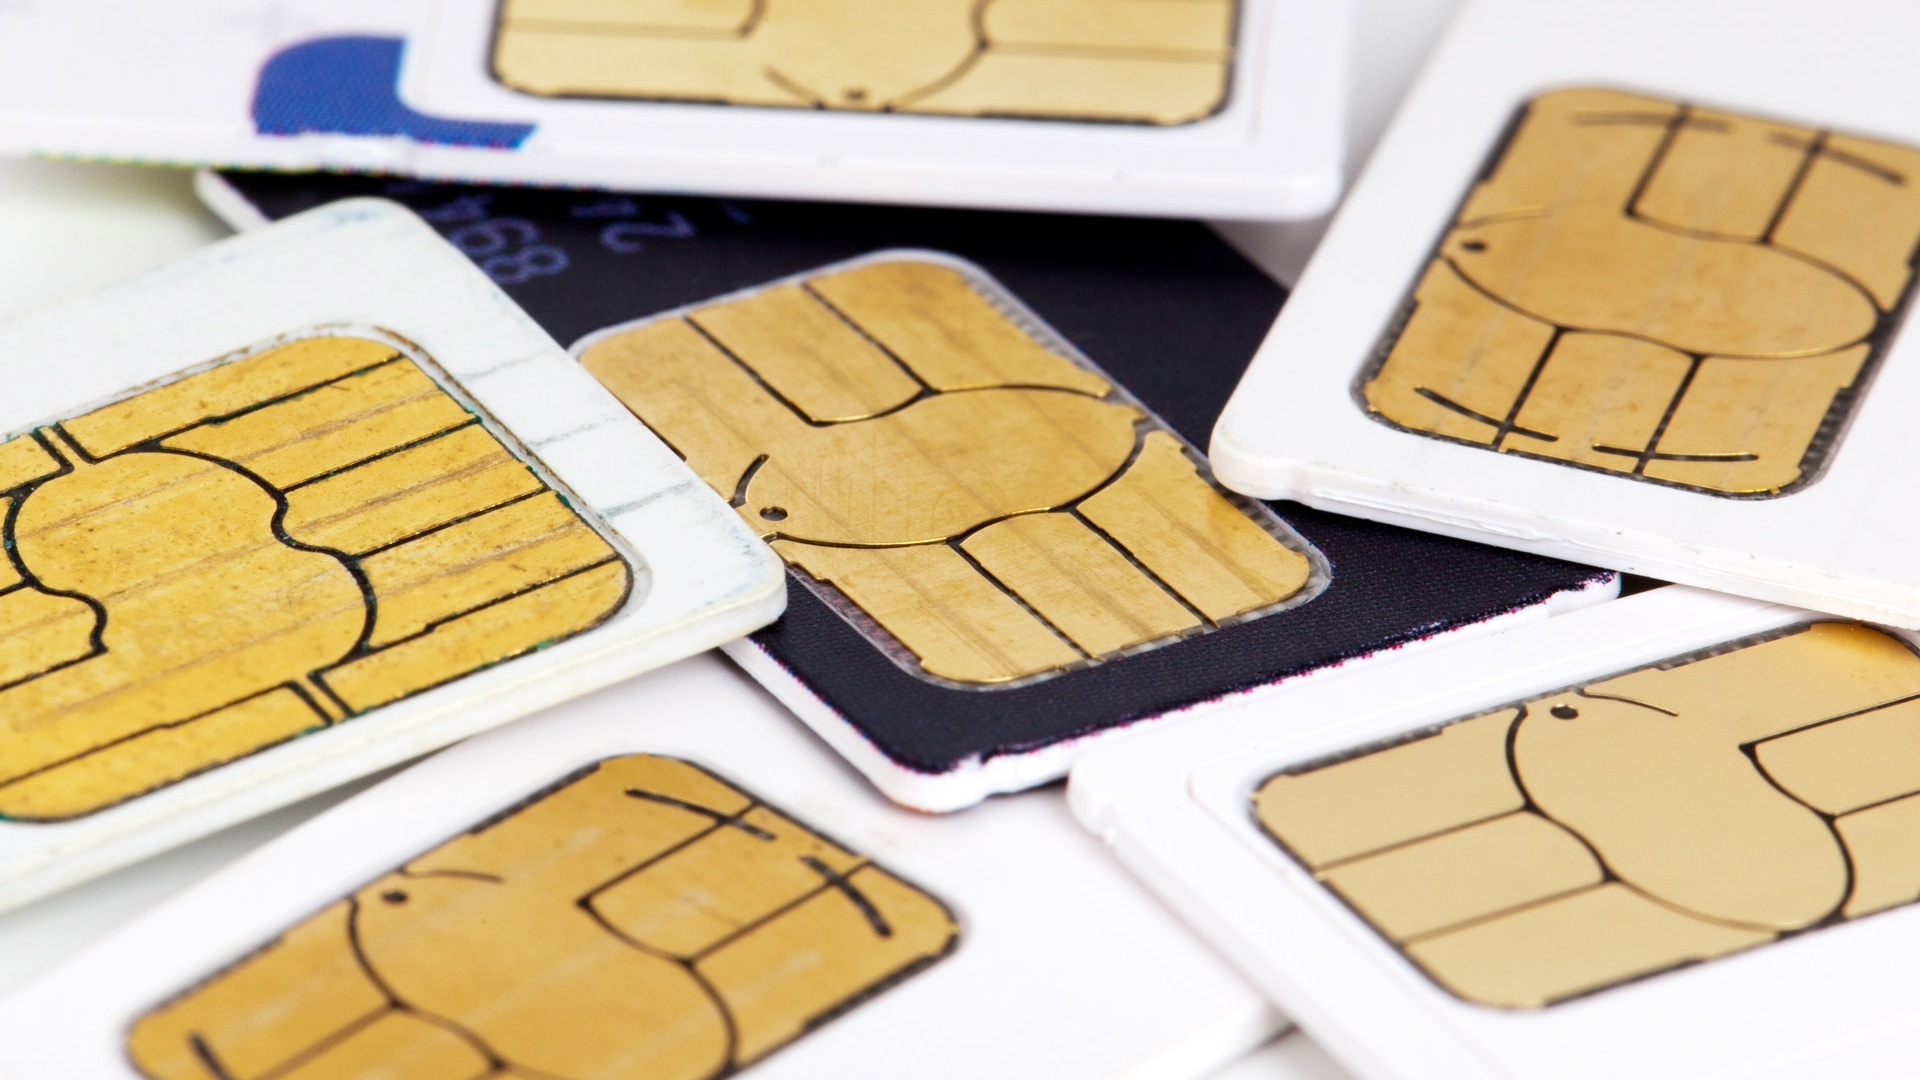 Отечественные операторы сотовой связи временно ограничили продажи сим-карт